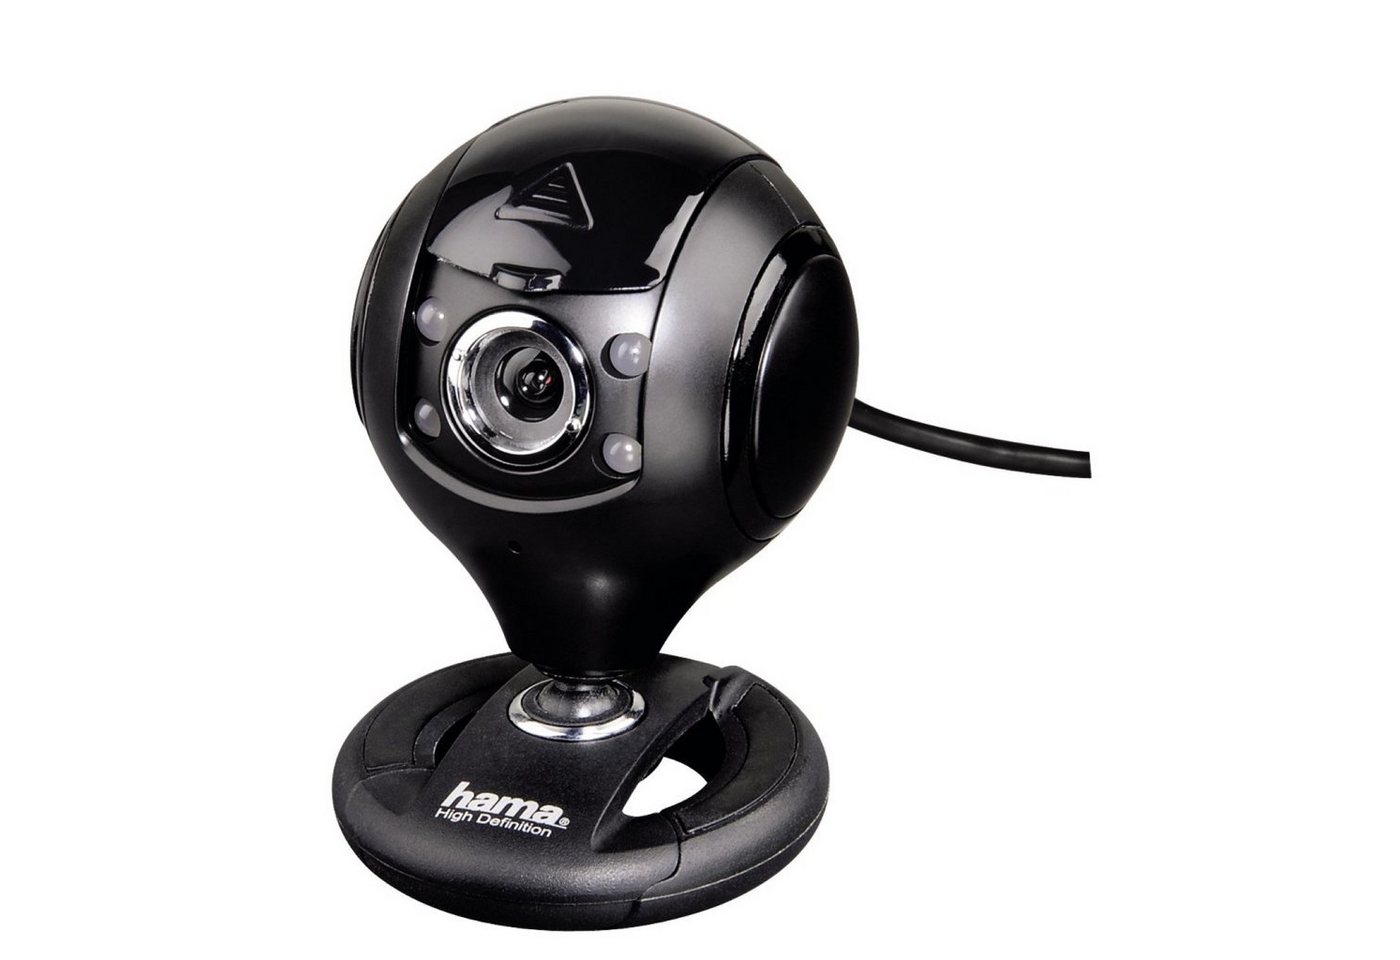 Hama HD Webcam Spy Protect Web-Kamera 720p 30 fps Webcam (mit Mikrofon und LED-Licht verschließbare Linse 720p Auflösung USB 2.0) von Hama